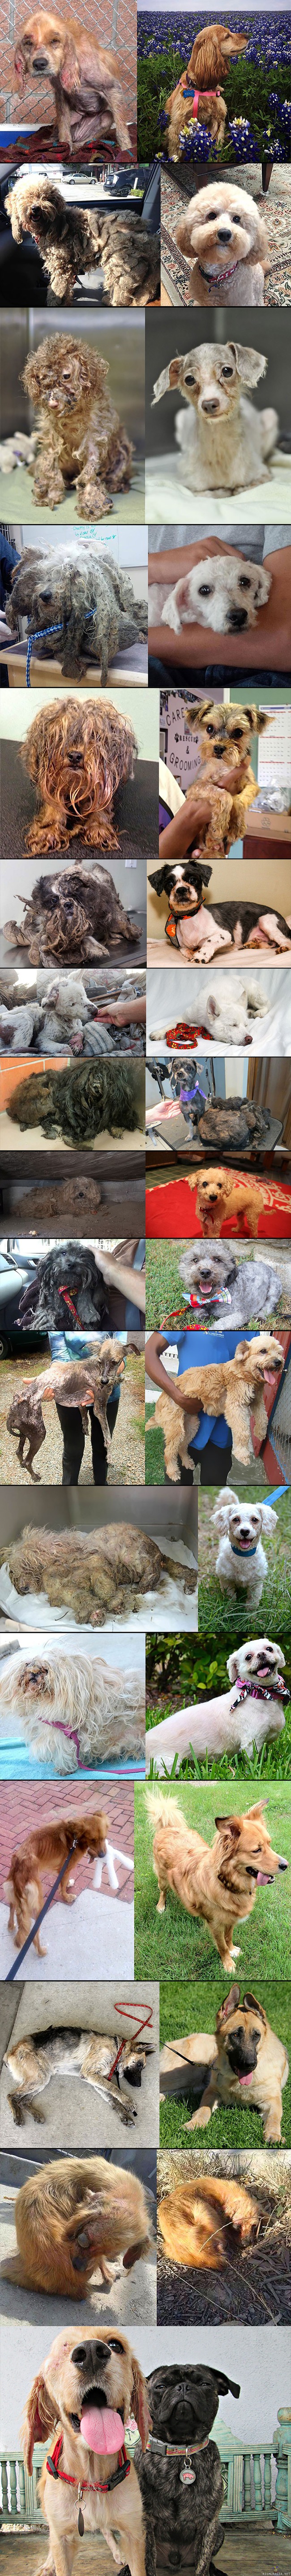 Pelastettuja koiria - Hylätyistä ja kodittomista koirista ennen ja jälkeen kuvia